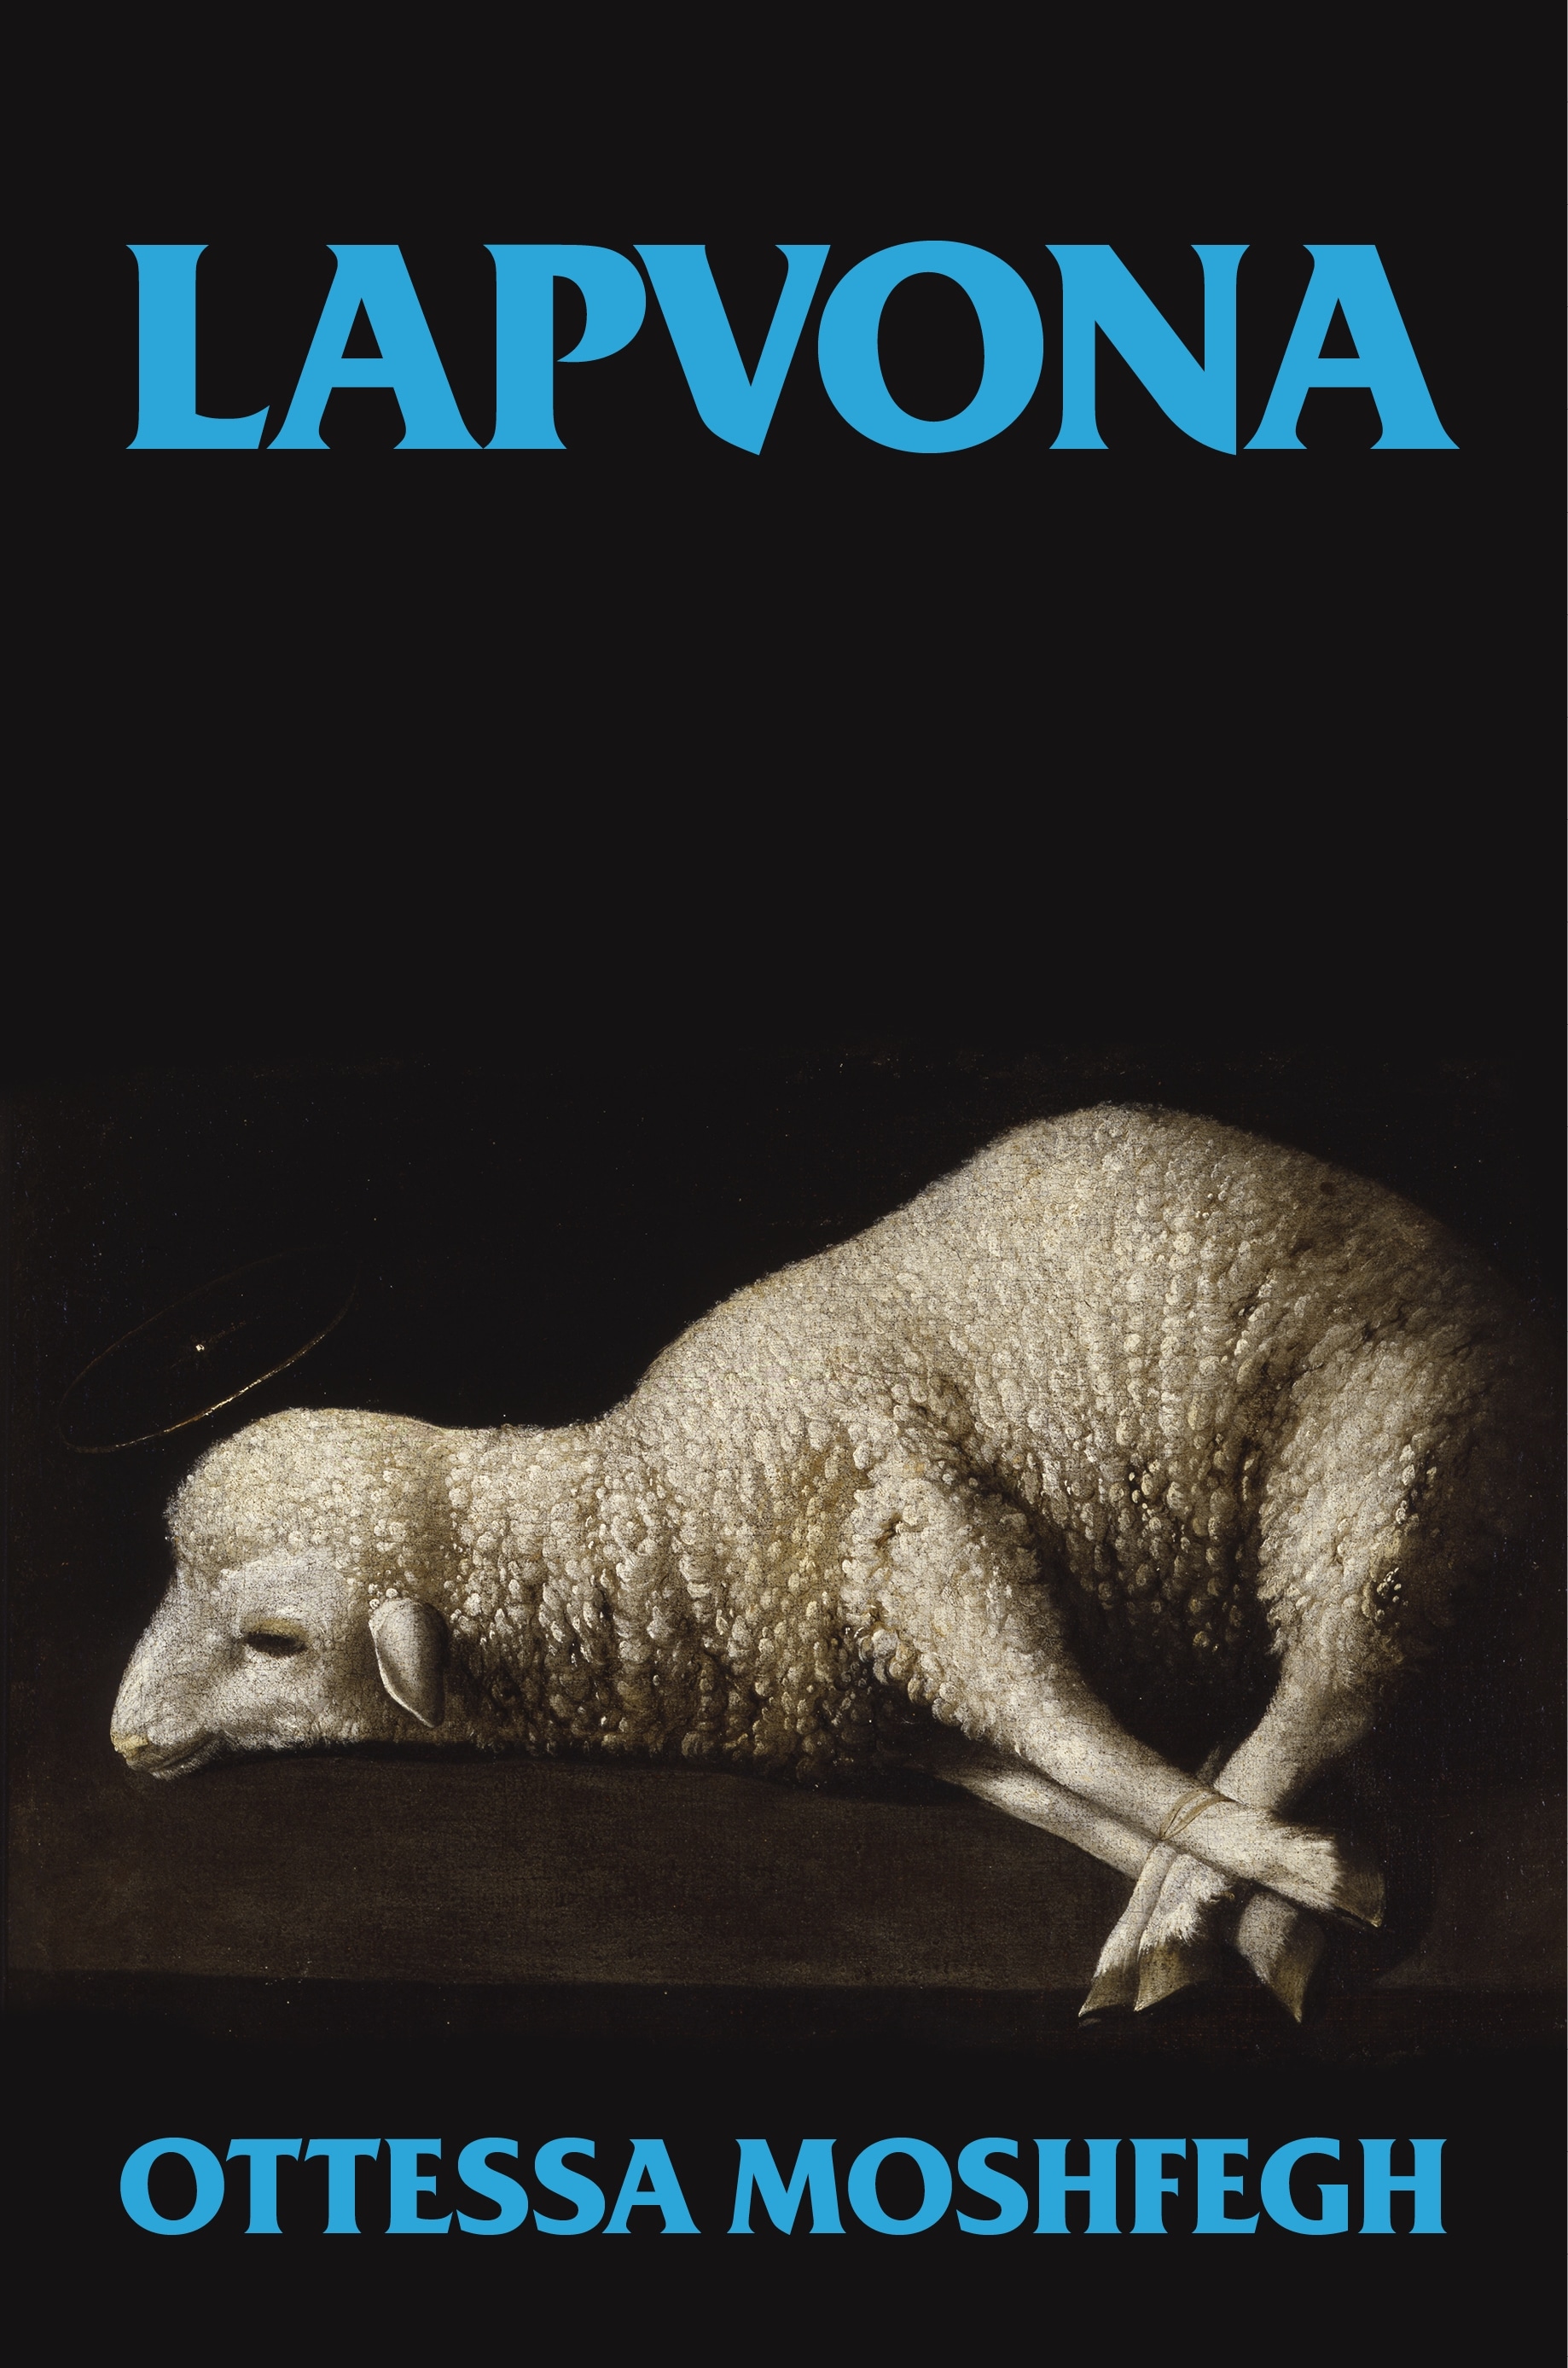 Book “Lapvona” by Ottessa Moshfegh — June 23, 2022